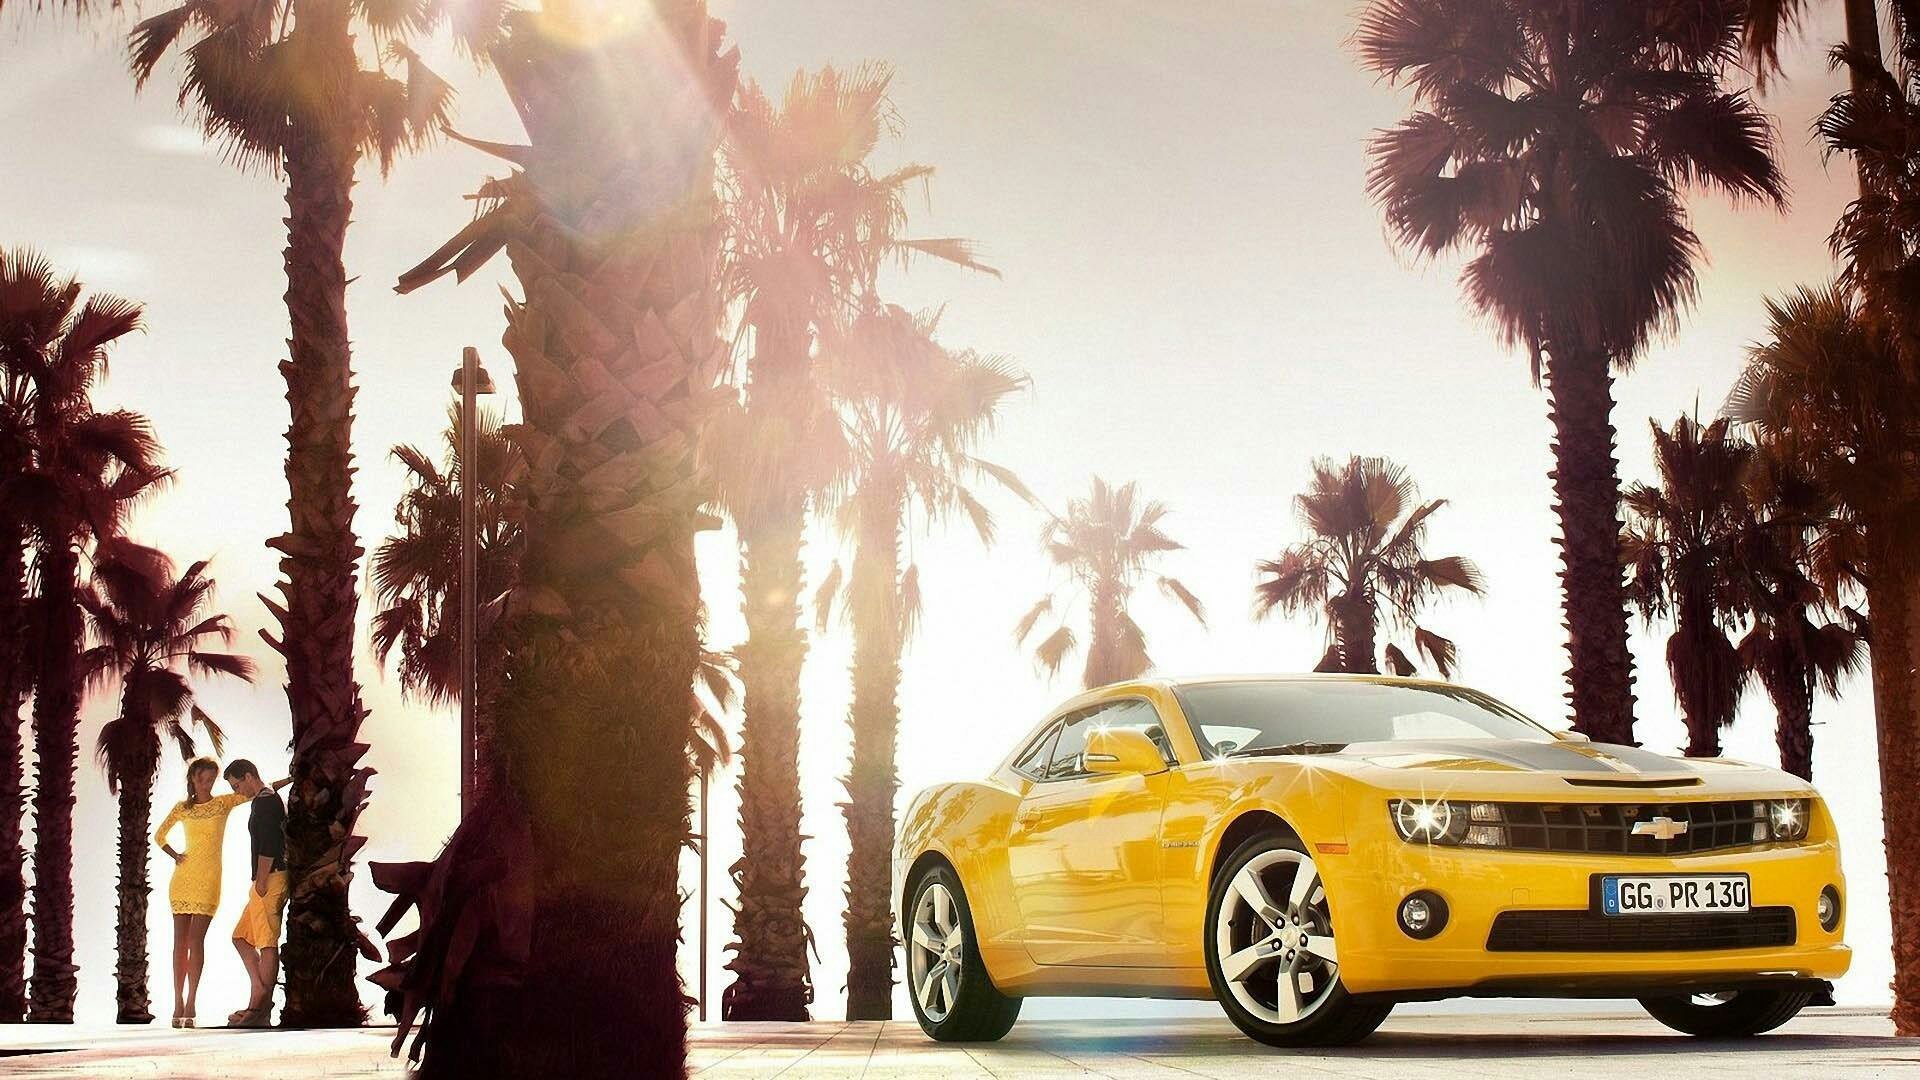 Chevrolet Сamaro желтого цвета стоит под пальмами